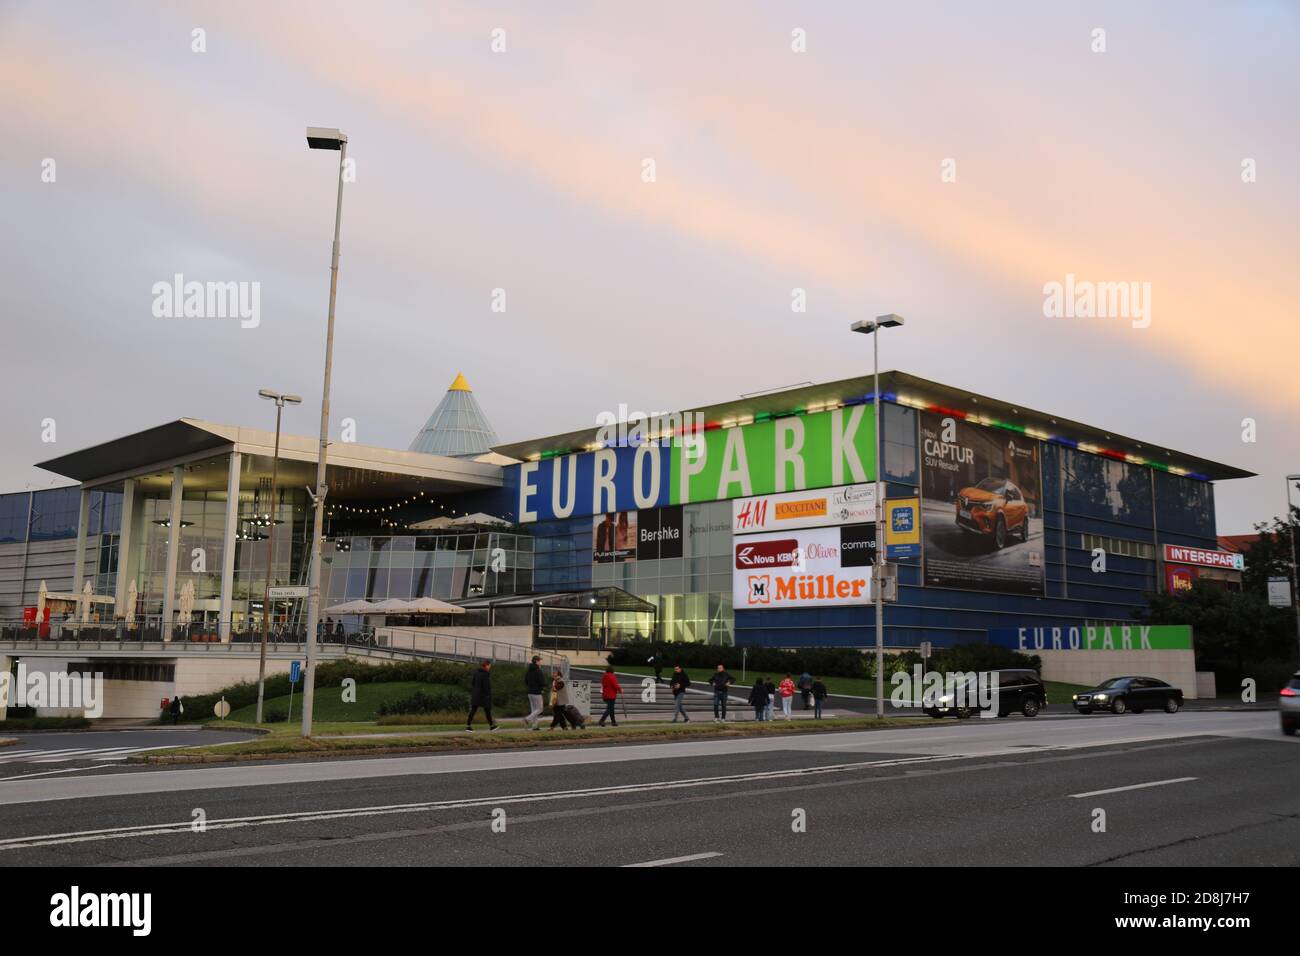 Europark Maribor Shopping Centre in Slovenia Stock Photo - Alamy